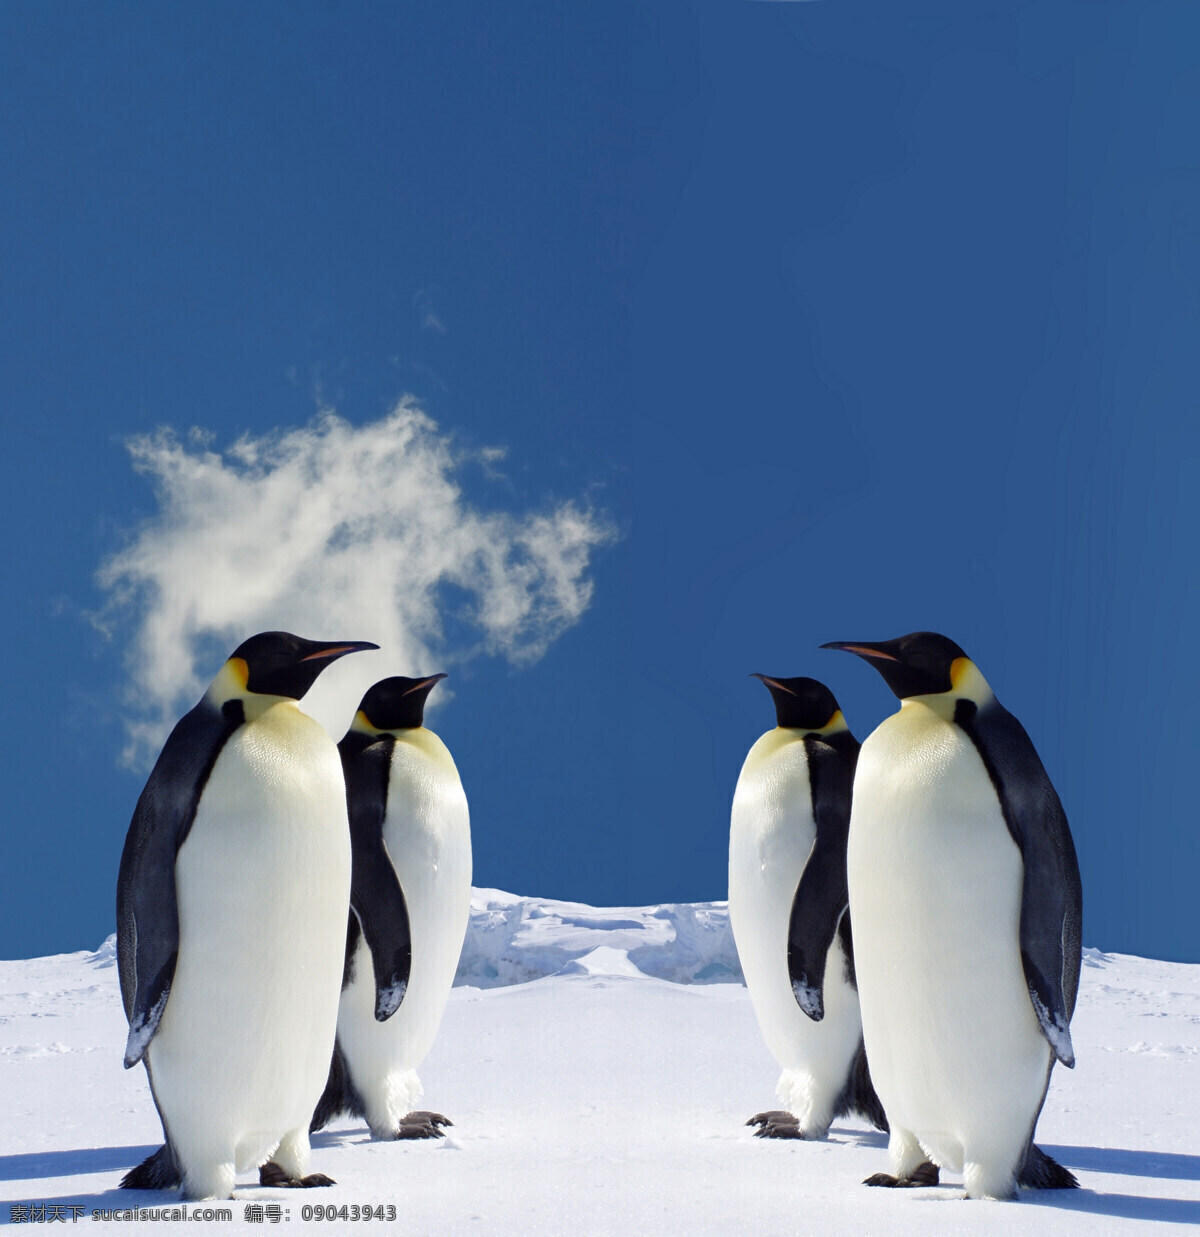 企鹅 南极 冰山 南极企鹅 企鹅素材 背景